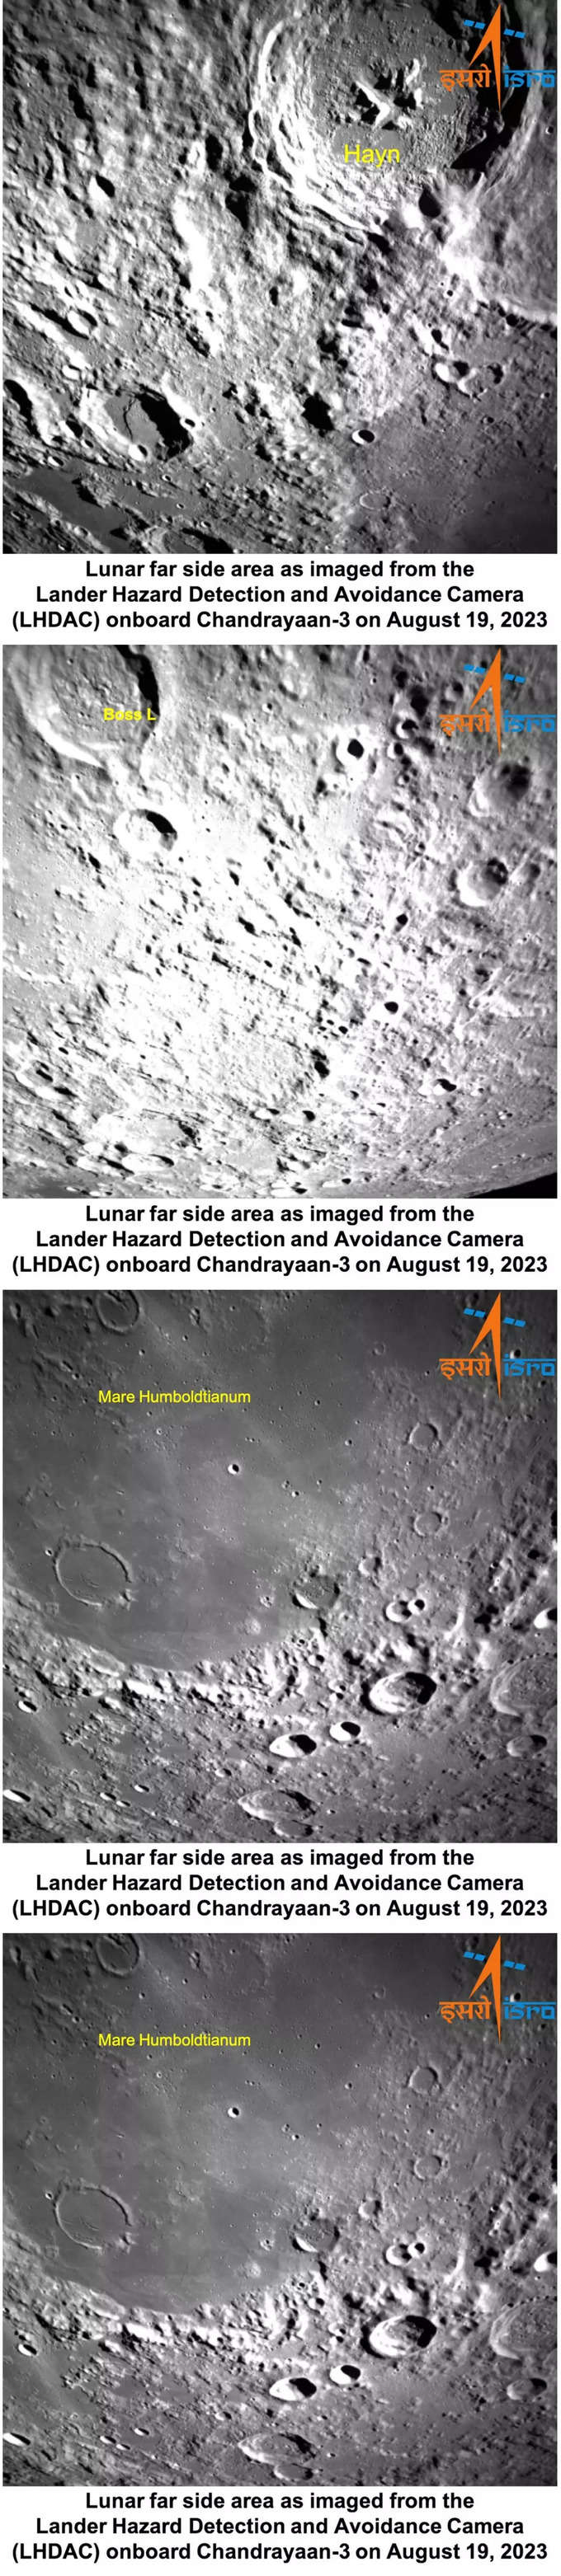 चंद्रयान-3 मिशन: Lander Hazard Detection and Avoidance Camera (LHDAC) ने चांद के दक्षिणी ध्रुव की ये तस्‍वीरें खींची है। यह कैमरा लैंडर मॉड्यूल को लैंडिंग के लिए सेफ जगह‍ तलाशने में मदद कर रहा है। ऐसी जगह ढूंढी जा रही है जो ऊबड-खाबड़ न हो। जहां बोल्‍डर्स या गहरी खाइयां न हों।